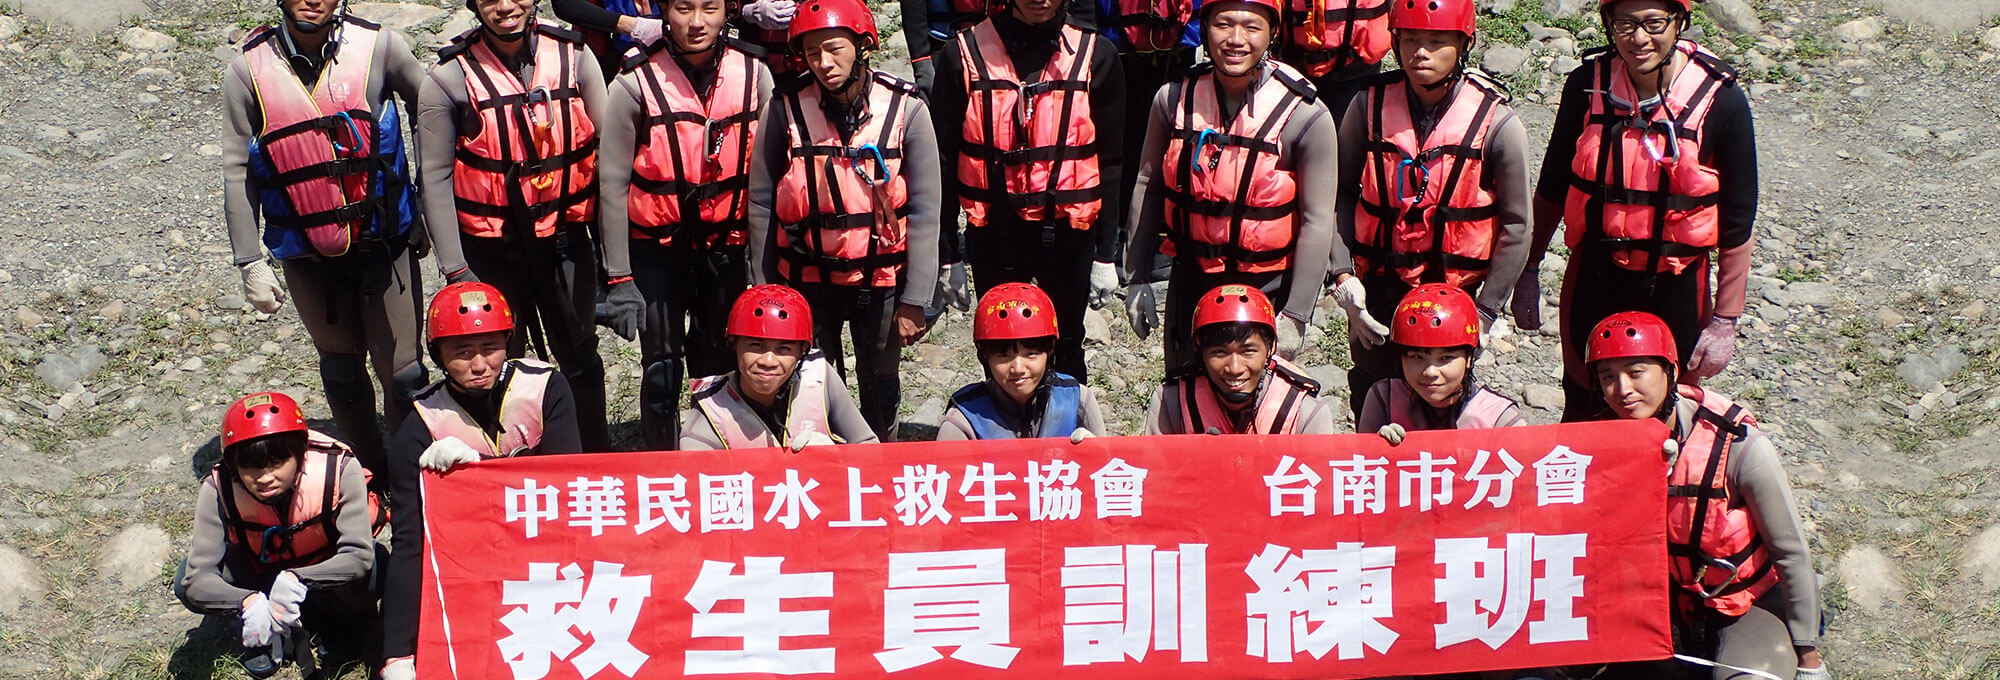 中華民國水上救生協會 台南市分會